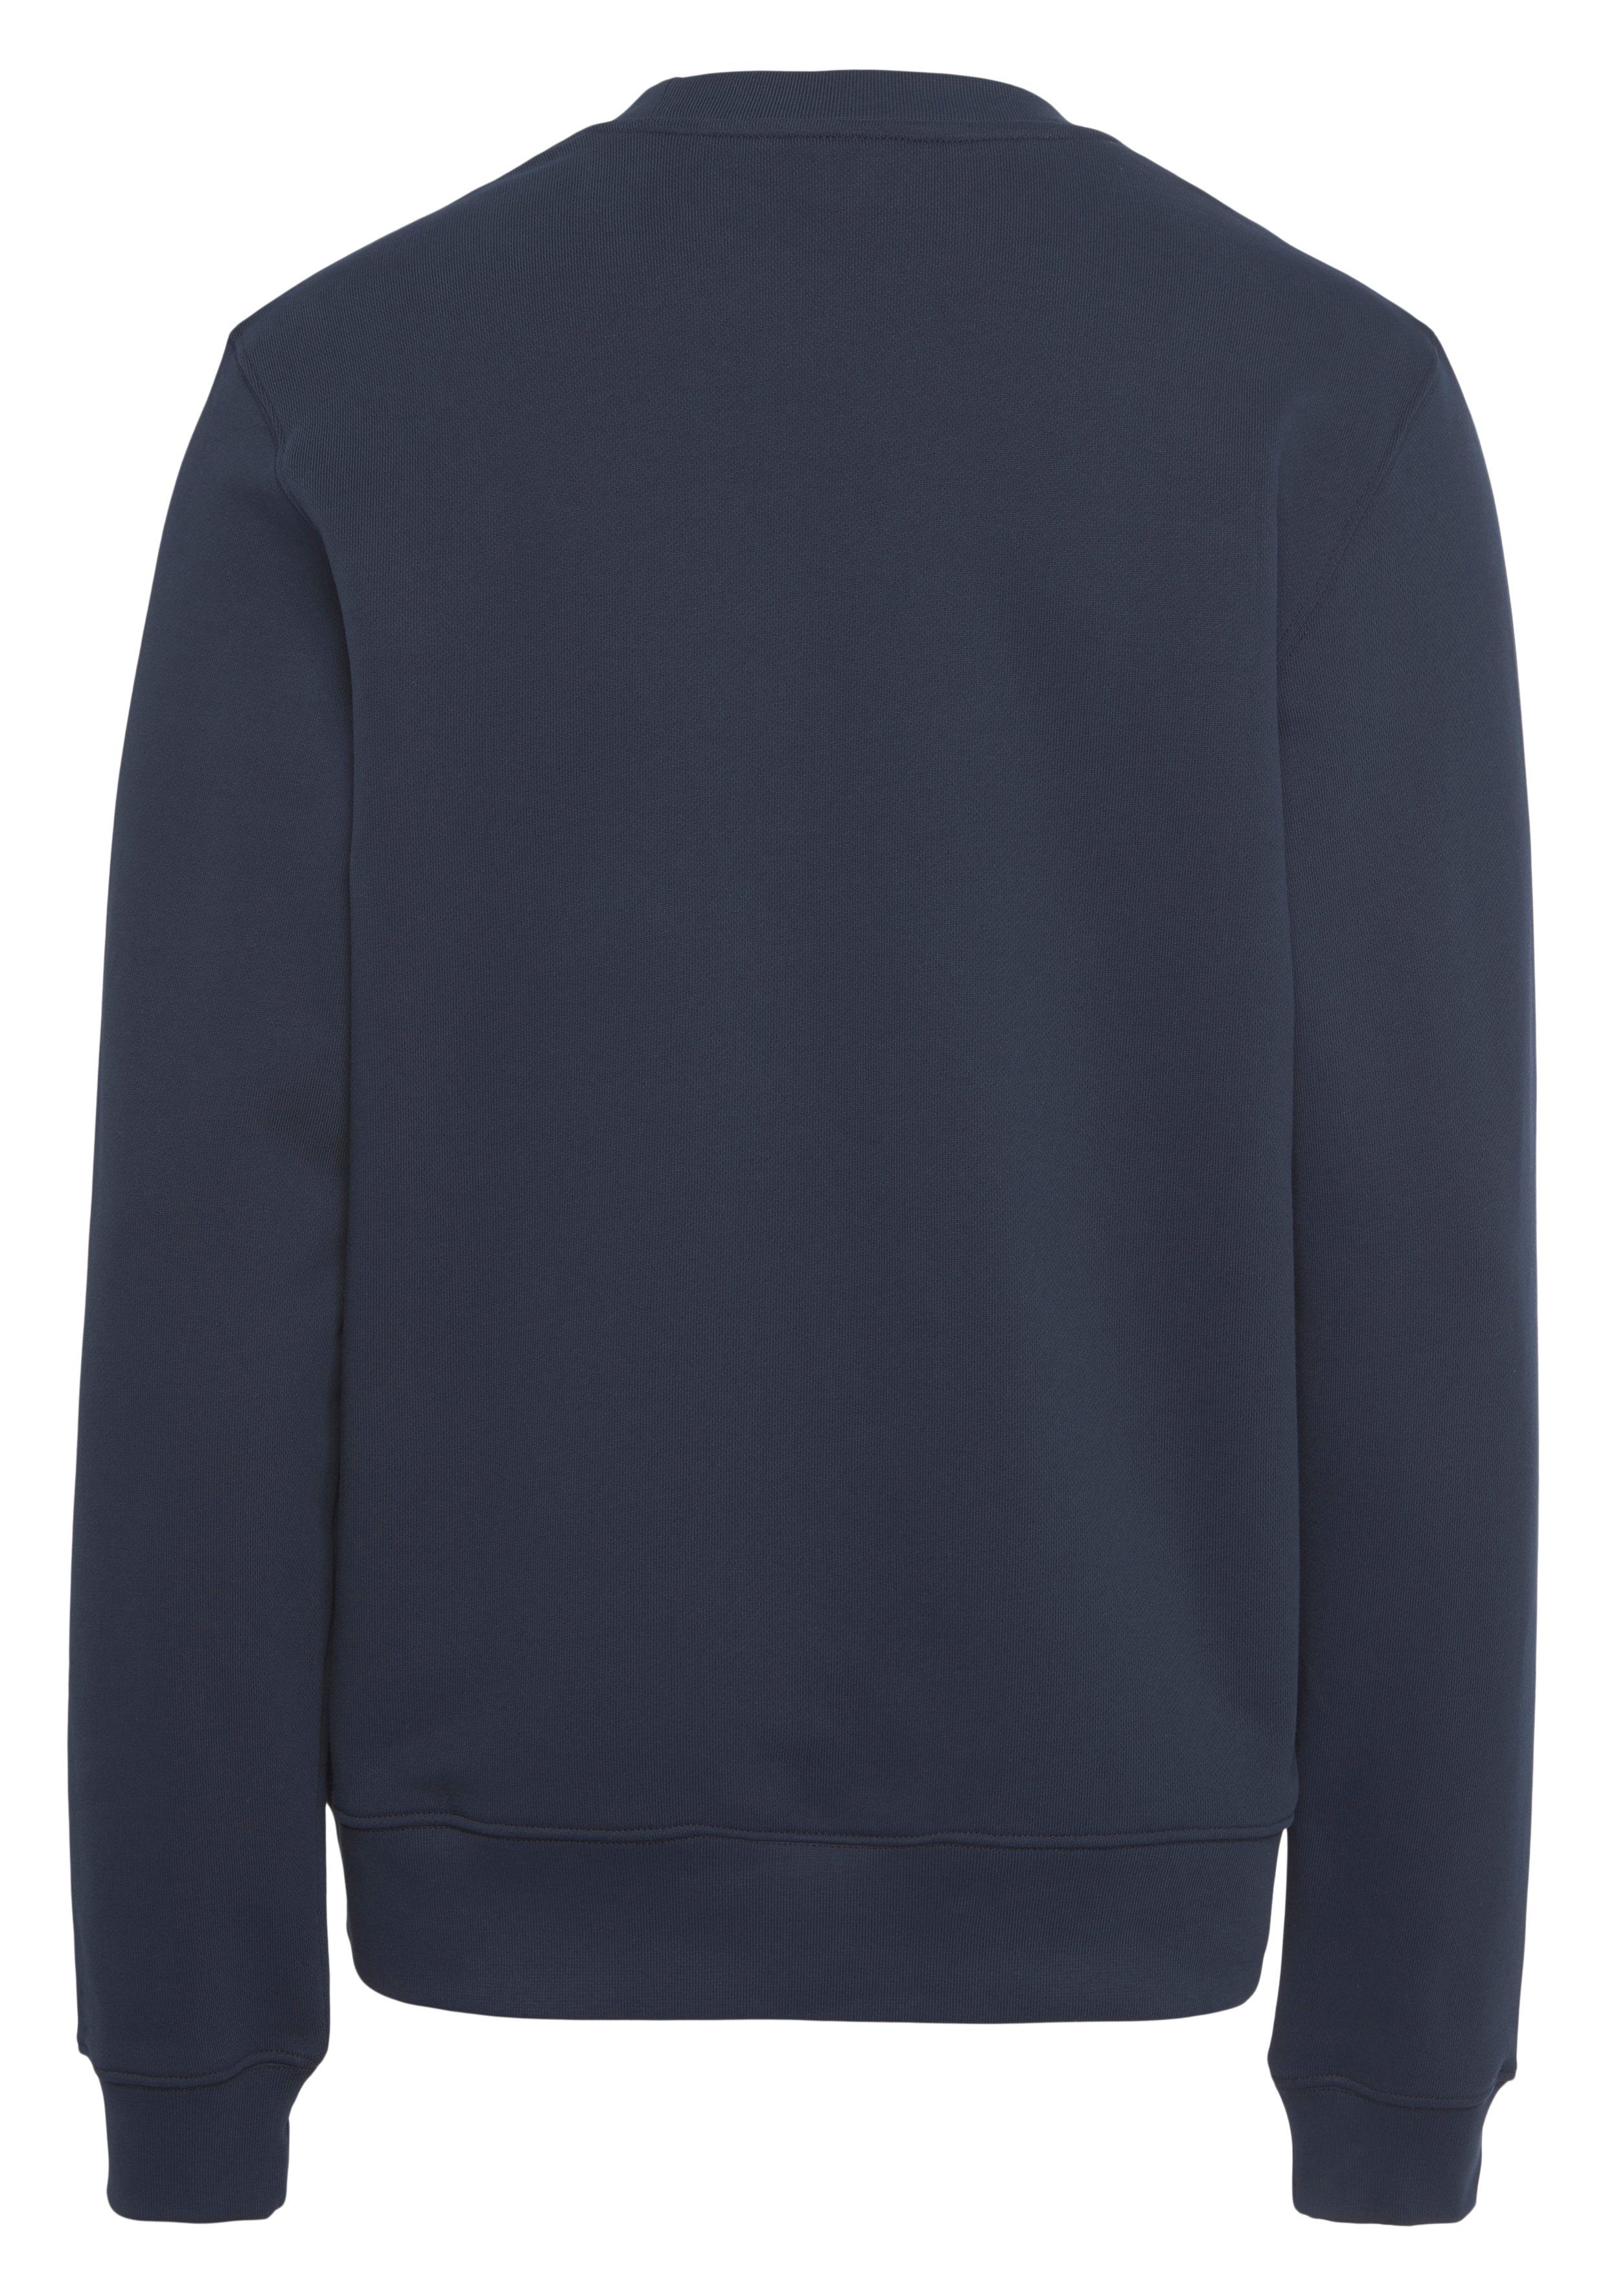 Lacoste Sweatshirt großem blue der Brust mit Logodruck SWEATSHIRTS navy auf